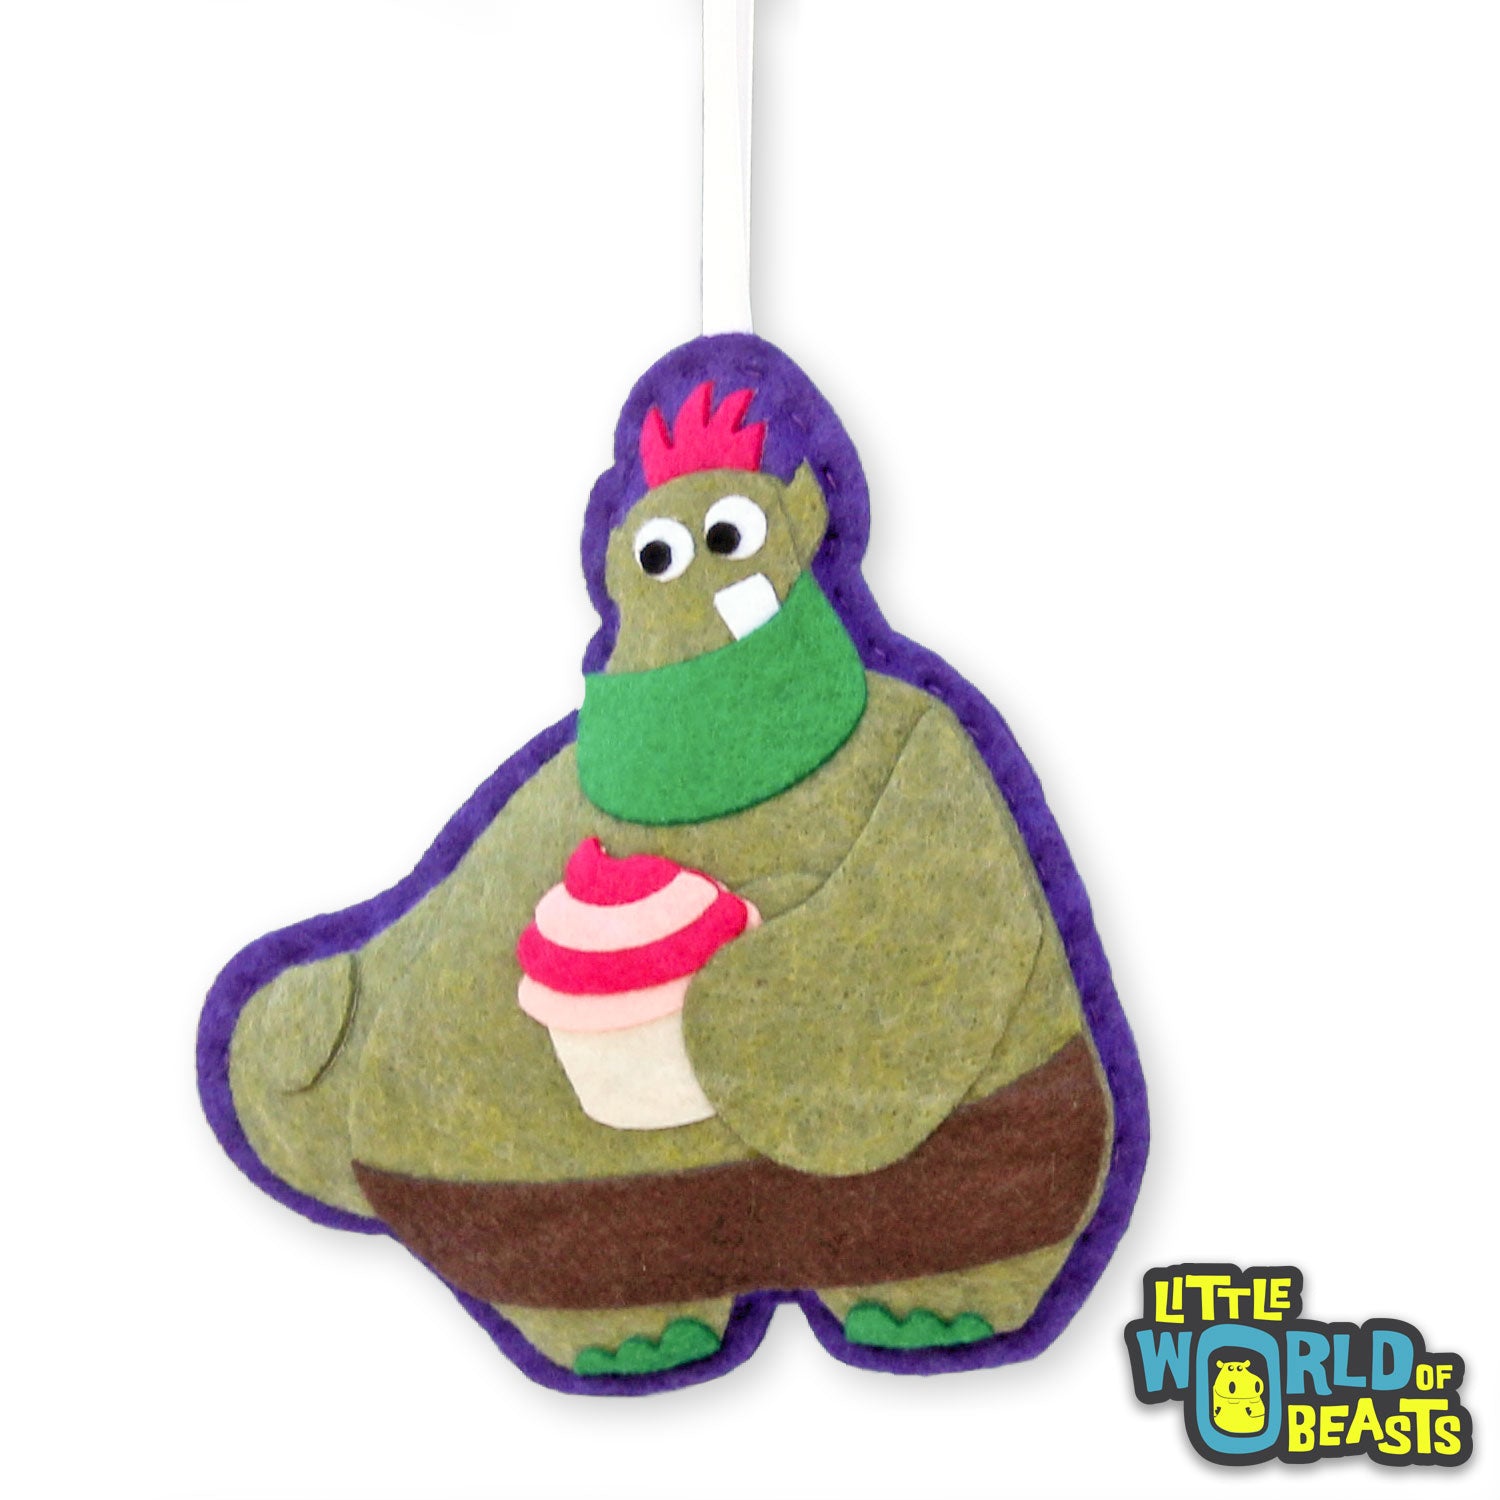 Otis the Cake Troll - Felt Monster Ornament - Little World of Beasts